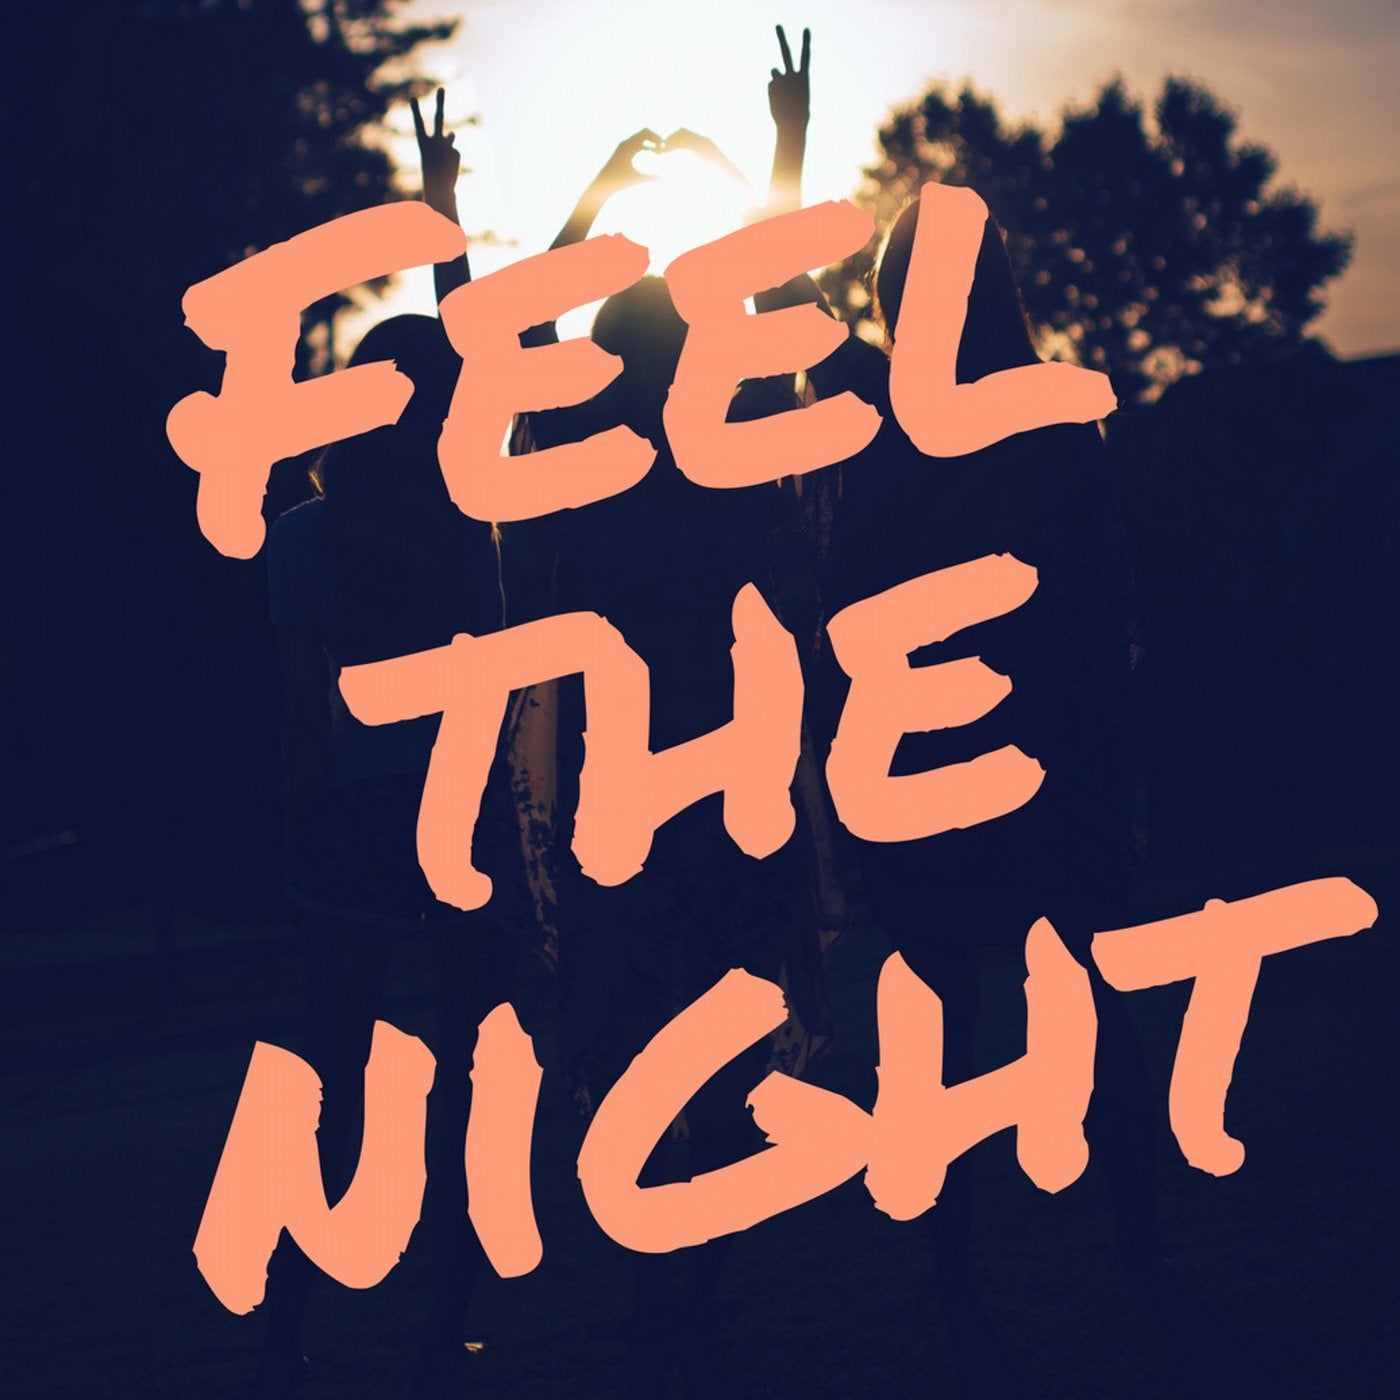 Feel the Night